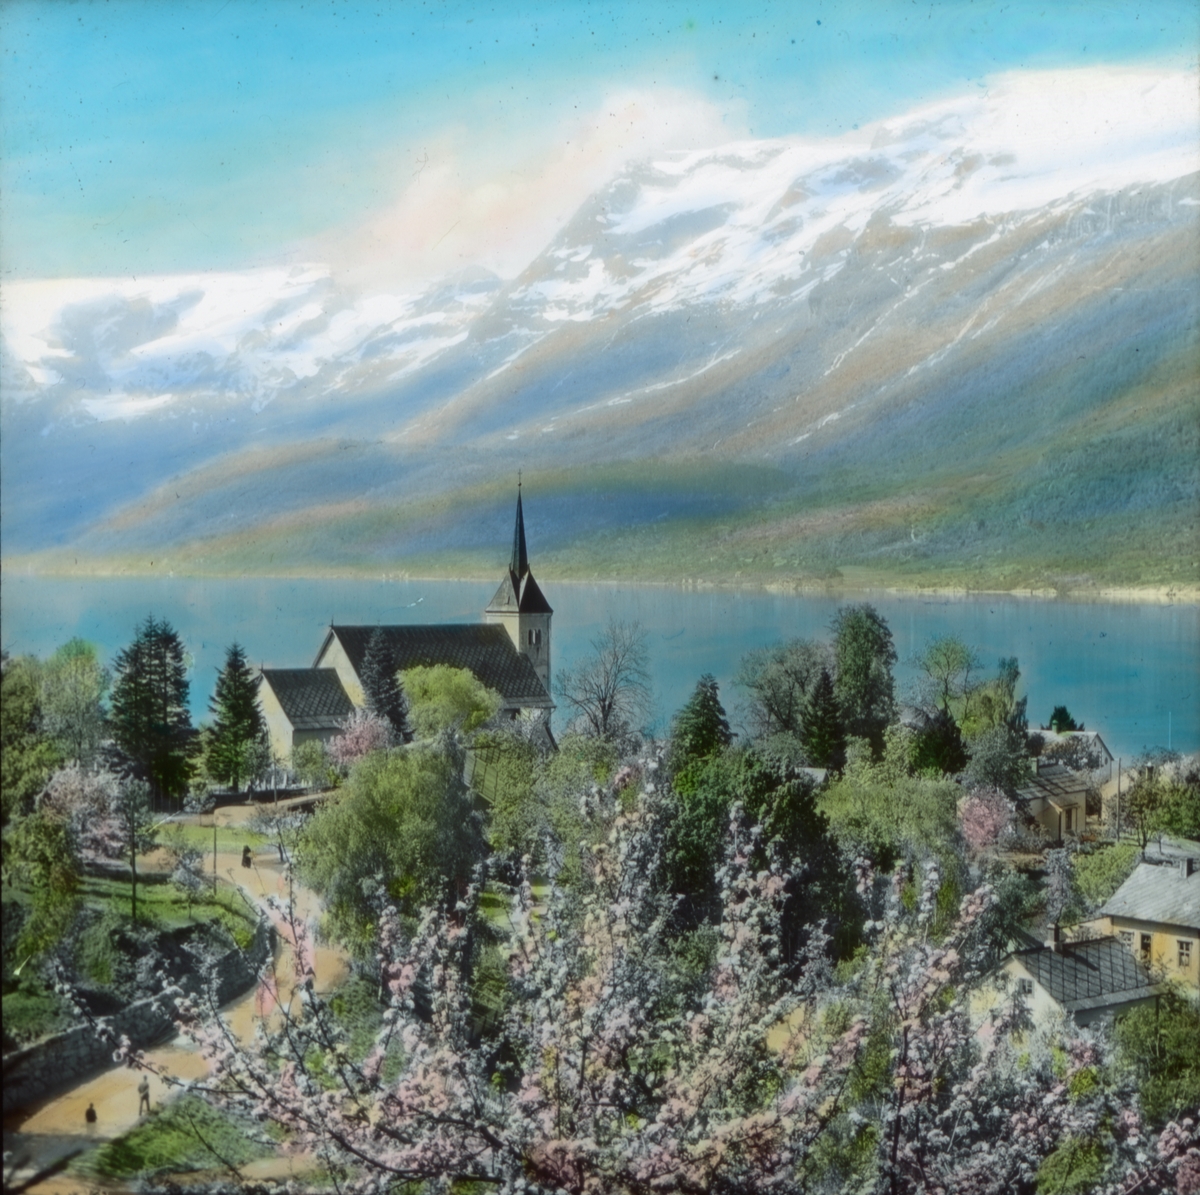 Håndkolorert dias. Utsyn over Hardangerfjorden med blomstrende frukttrær i forgrunnen. En kirke ligger på et nes. I bakgrunnen sees snødekte fjell. Del av Wilses serie kalt "Brudeferden". 